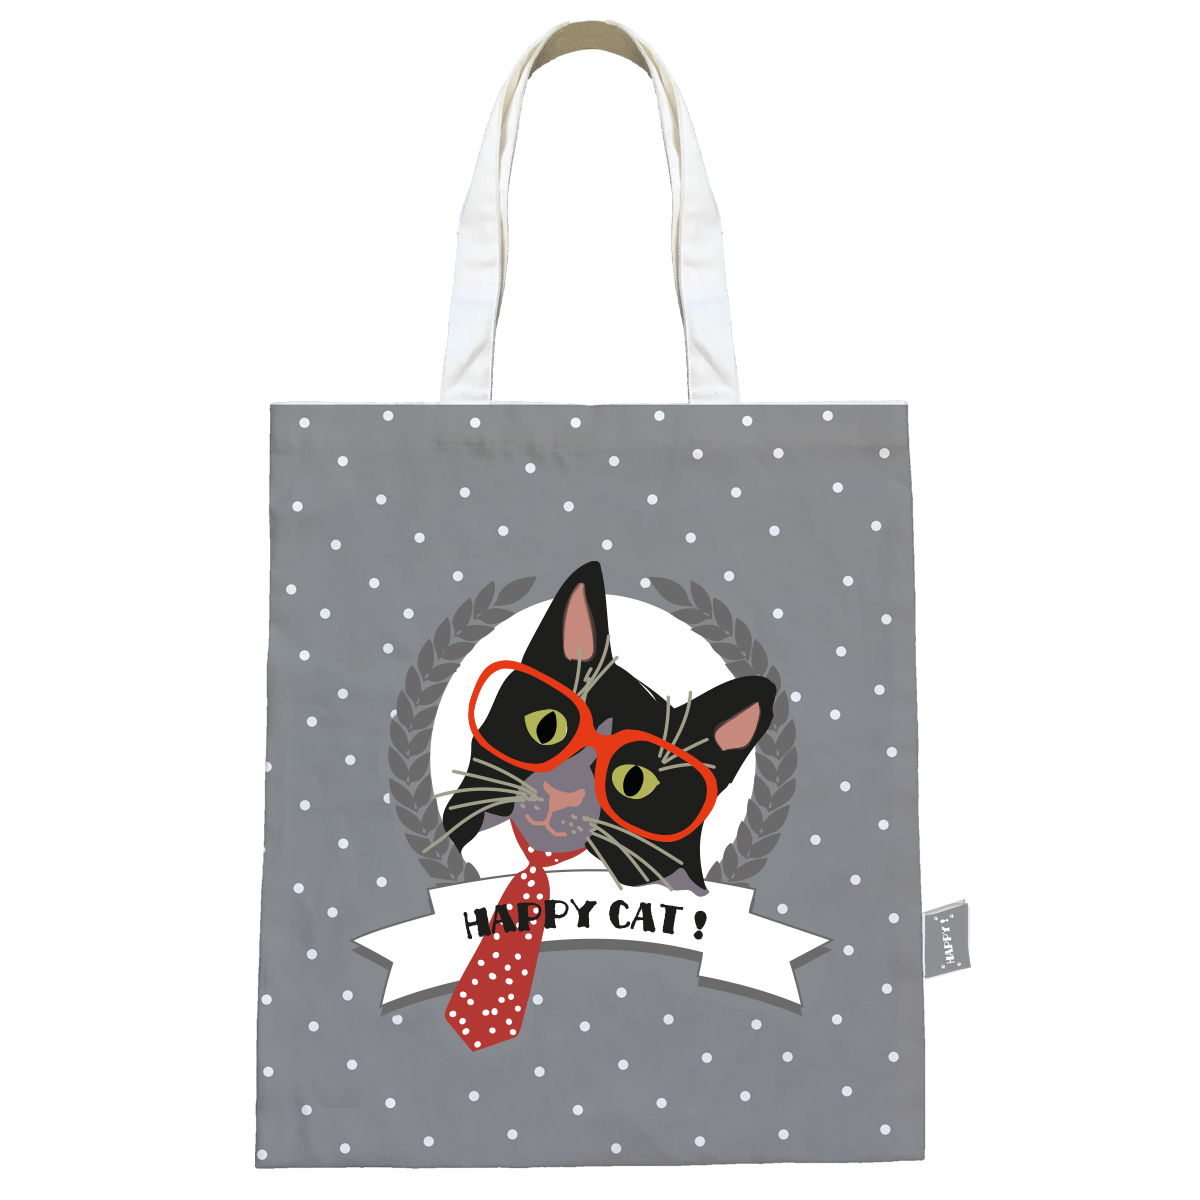 Sac coton / tote bag \'Happy Cat\' gris (cravate) - 44x38 cm - [Q0593]